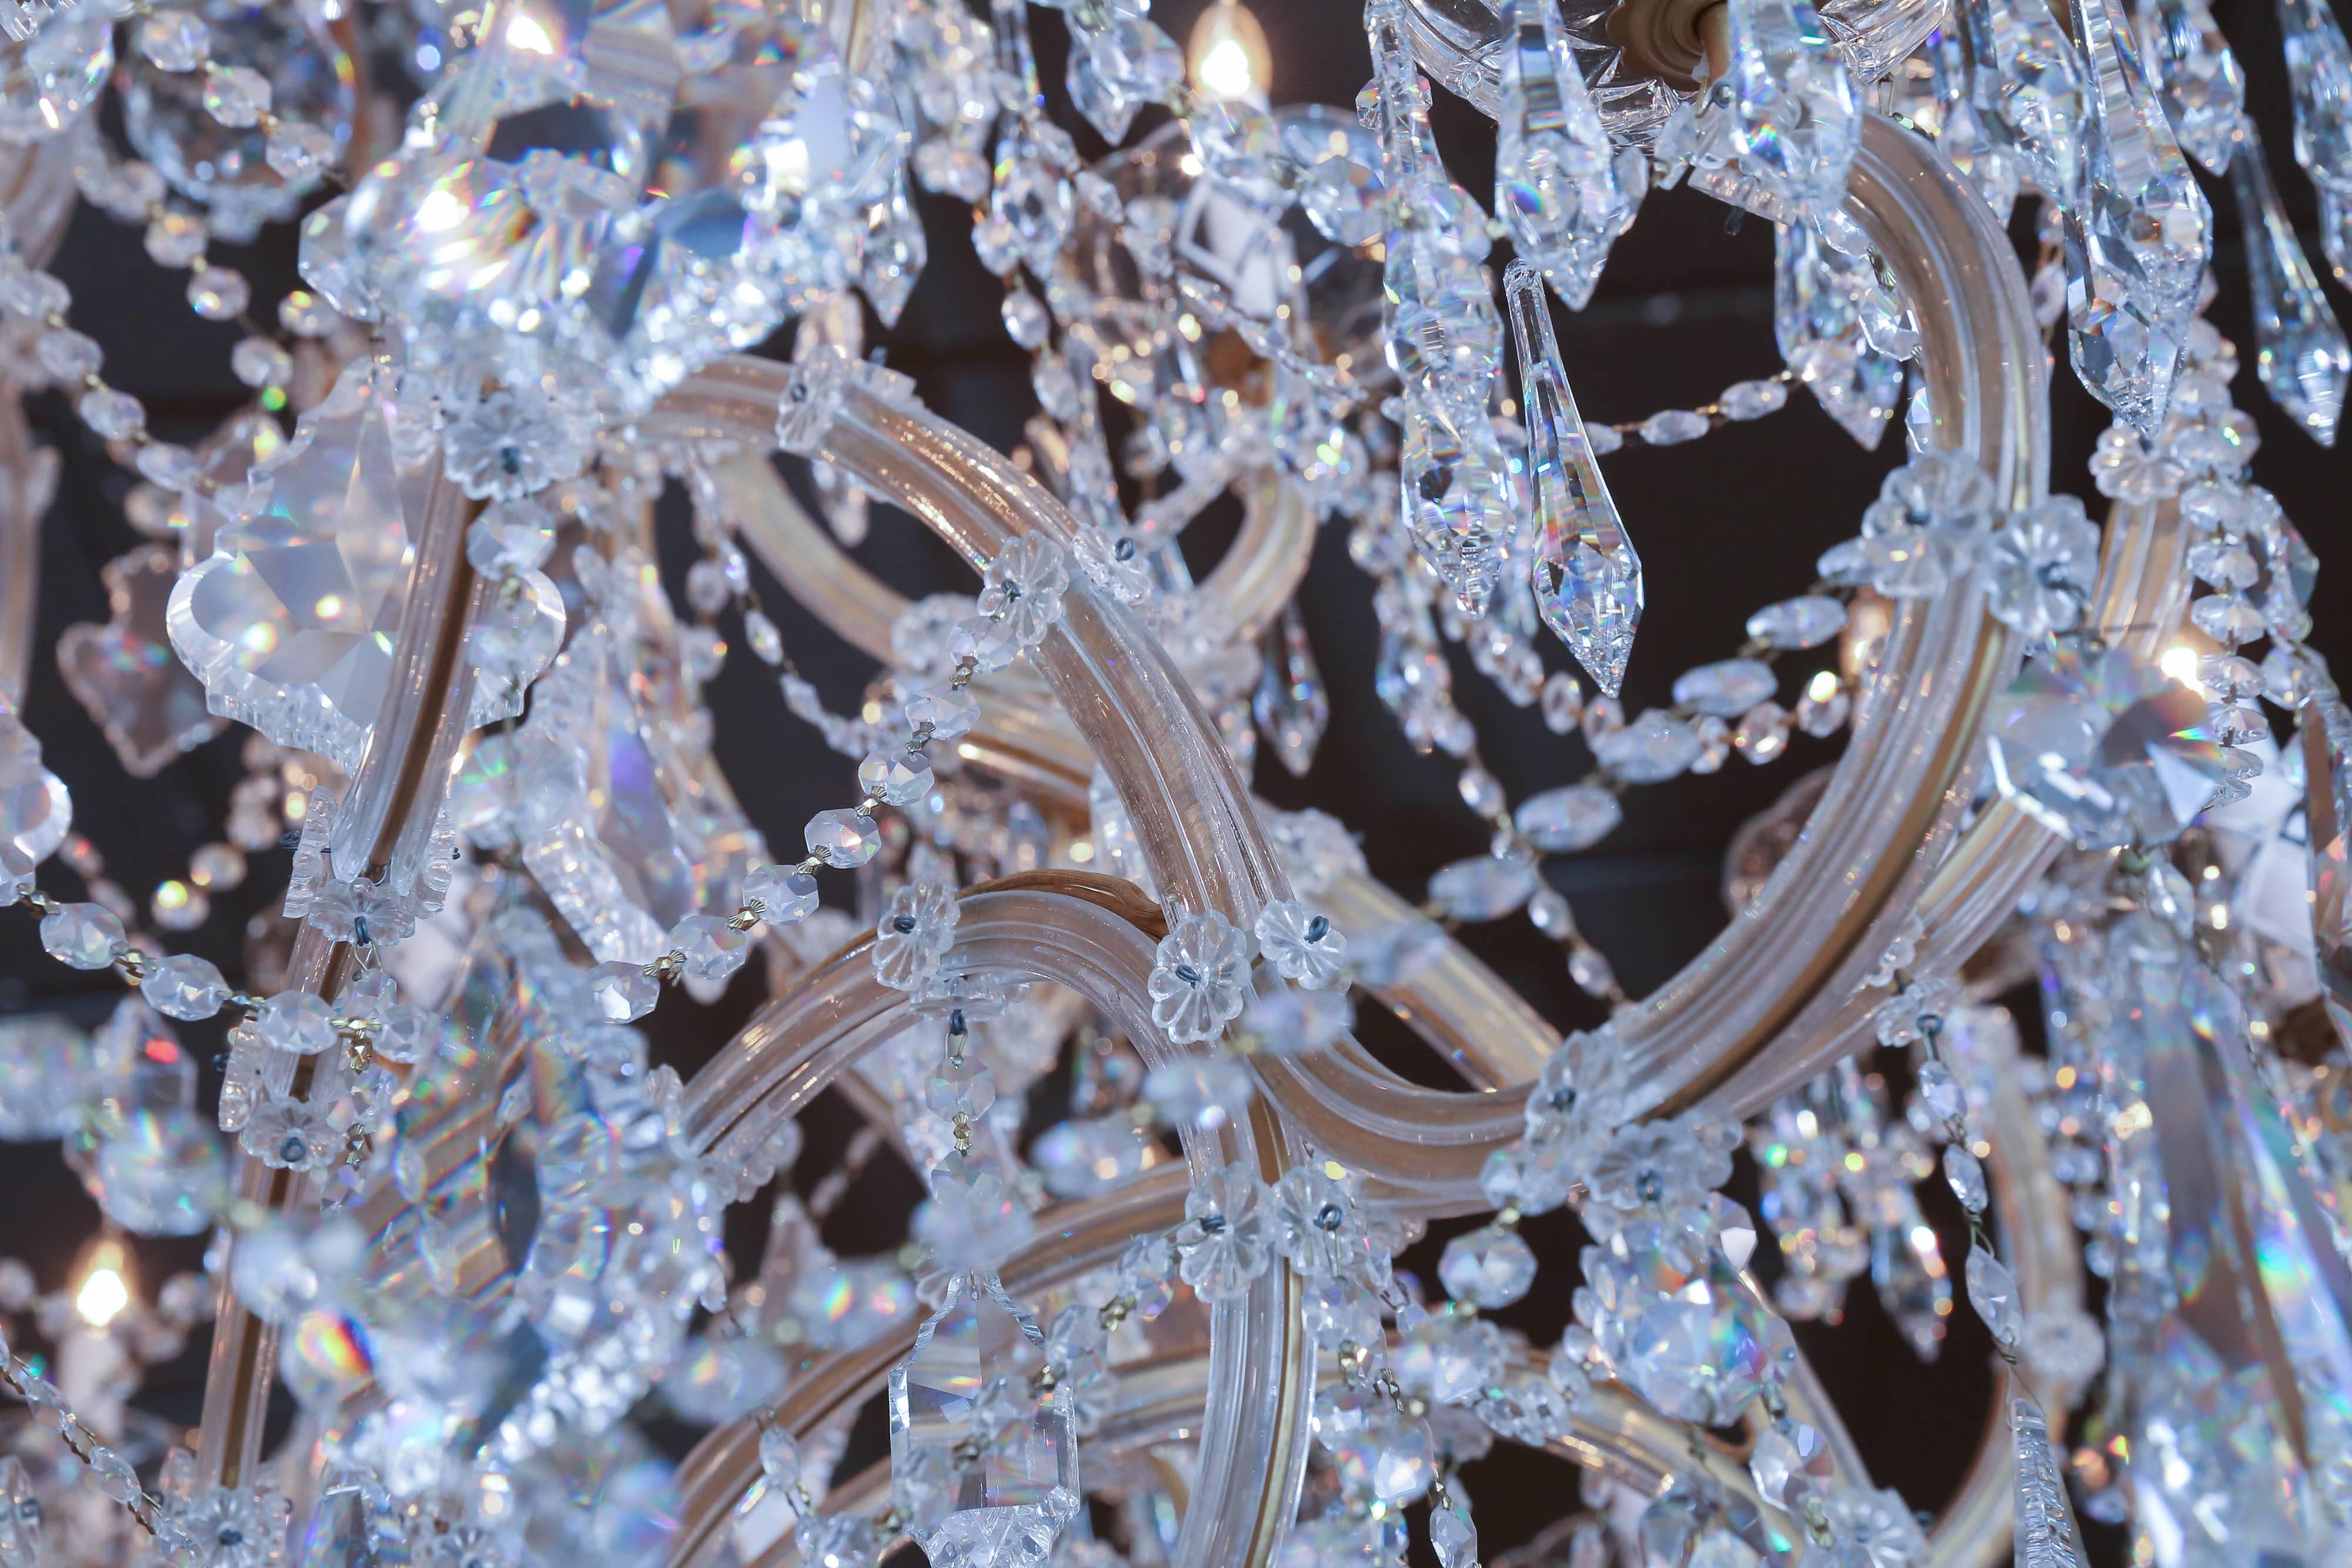 swarovski crystal chandeliers